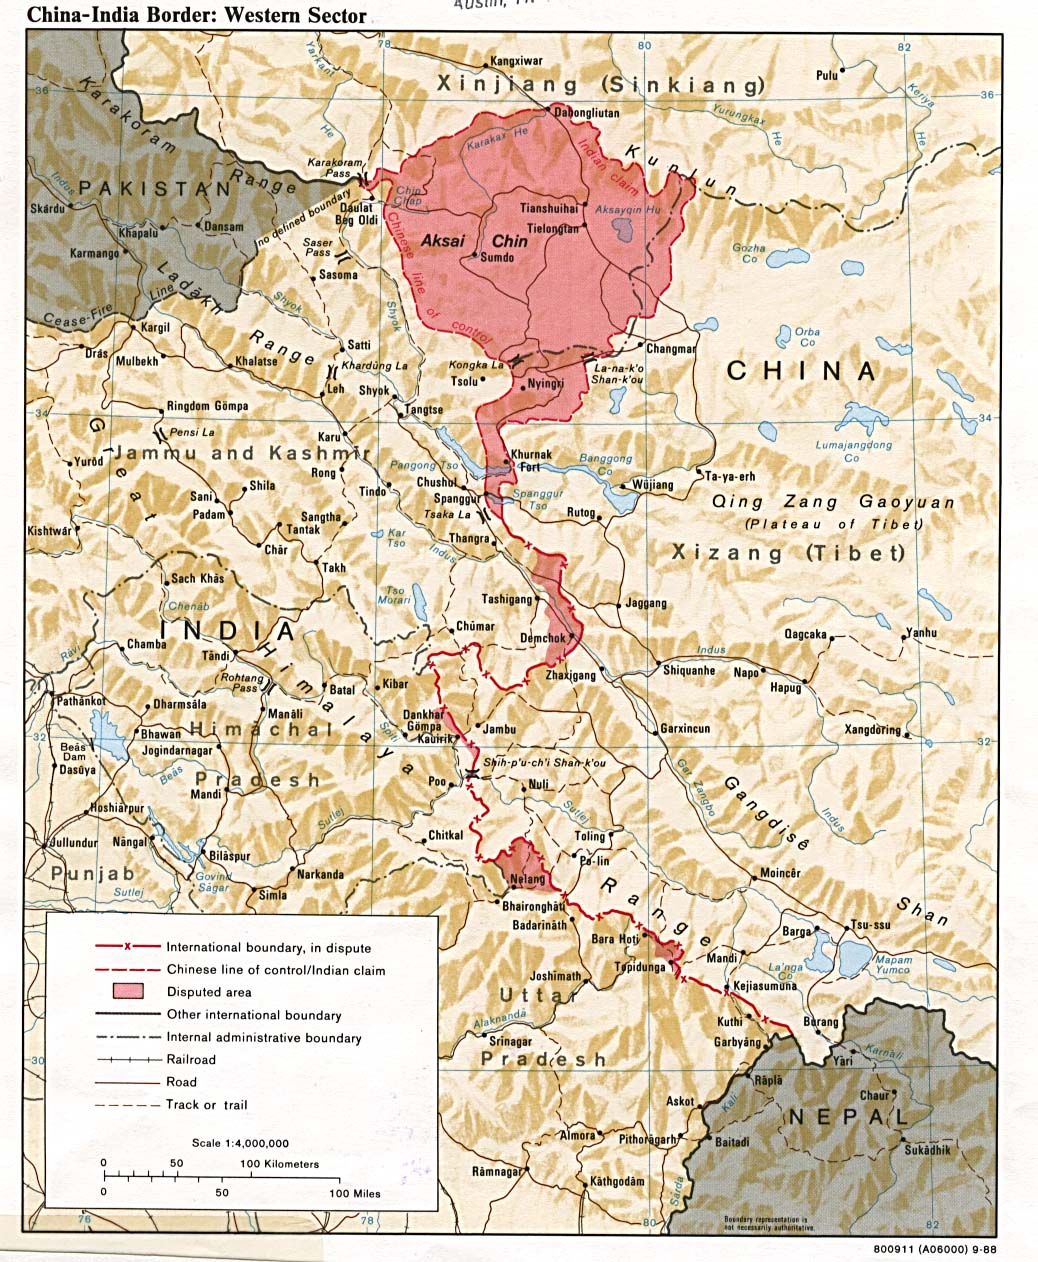 Le secteur occidental : Aksaï Chin/Ladakh